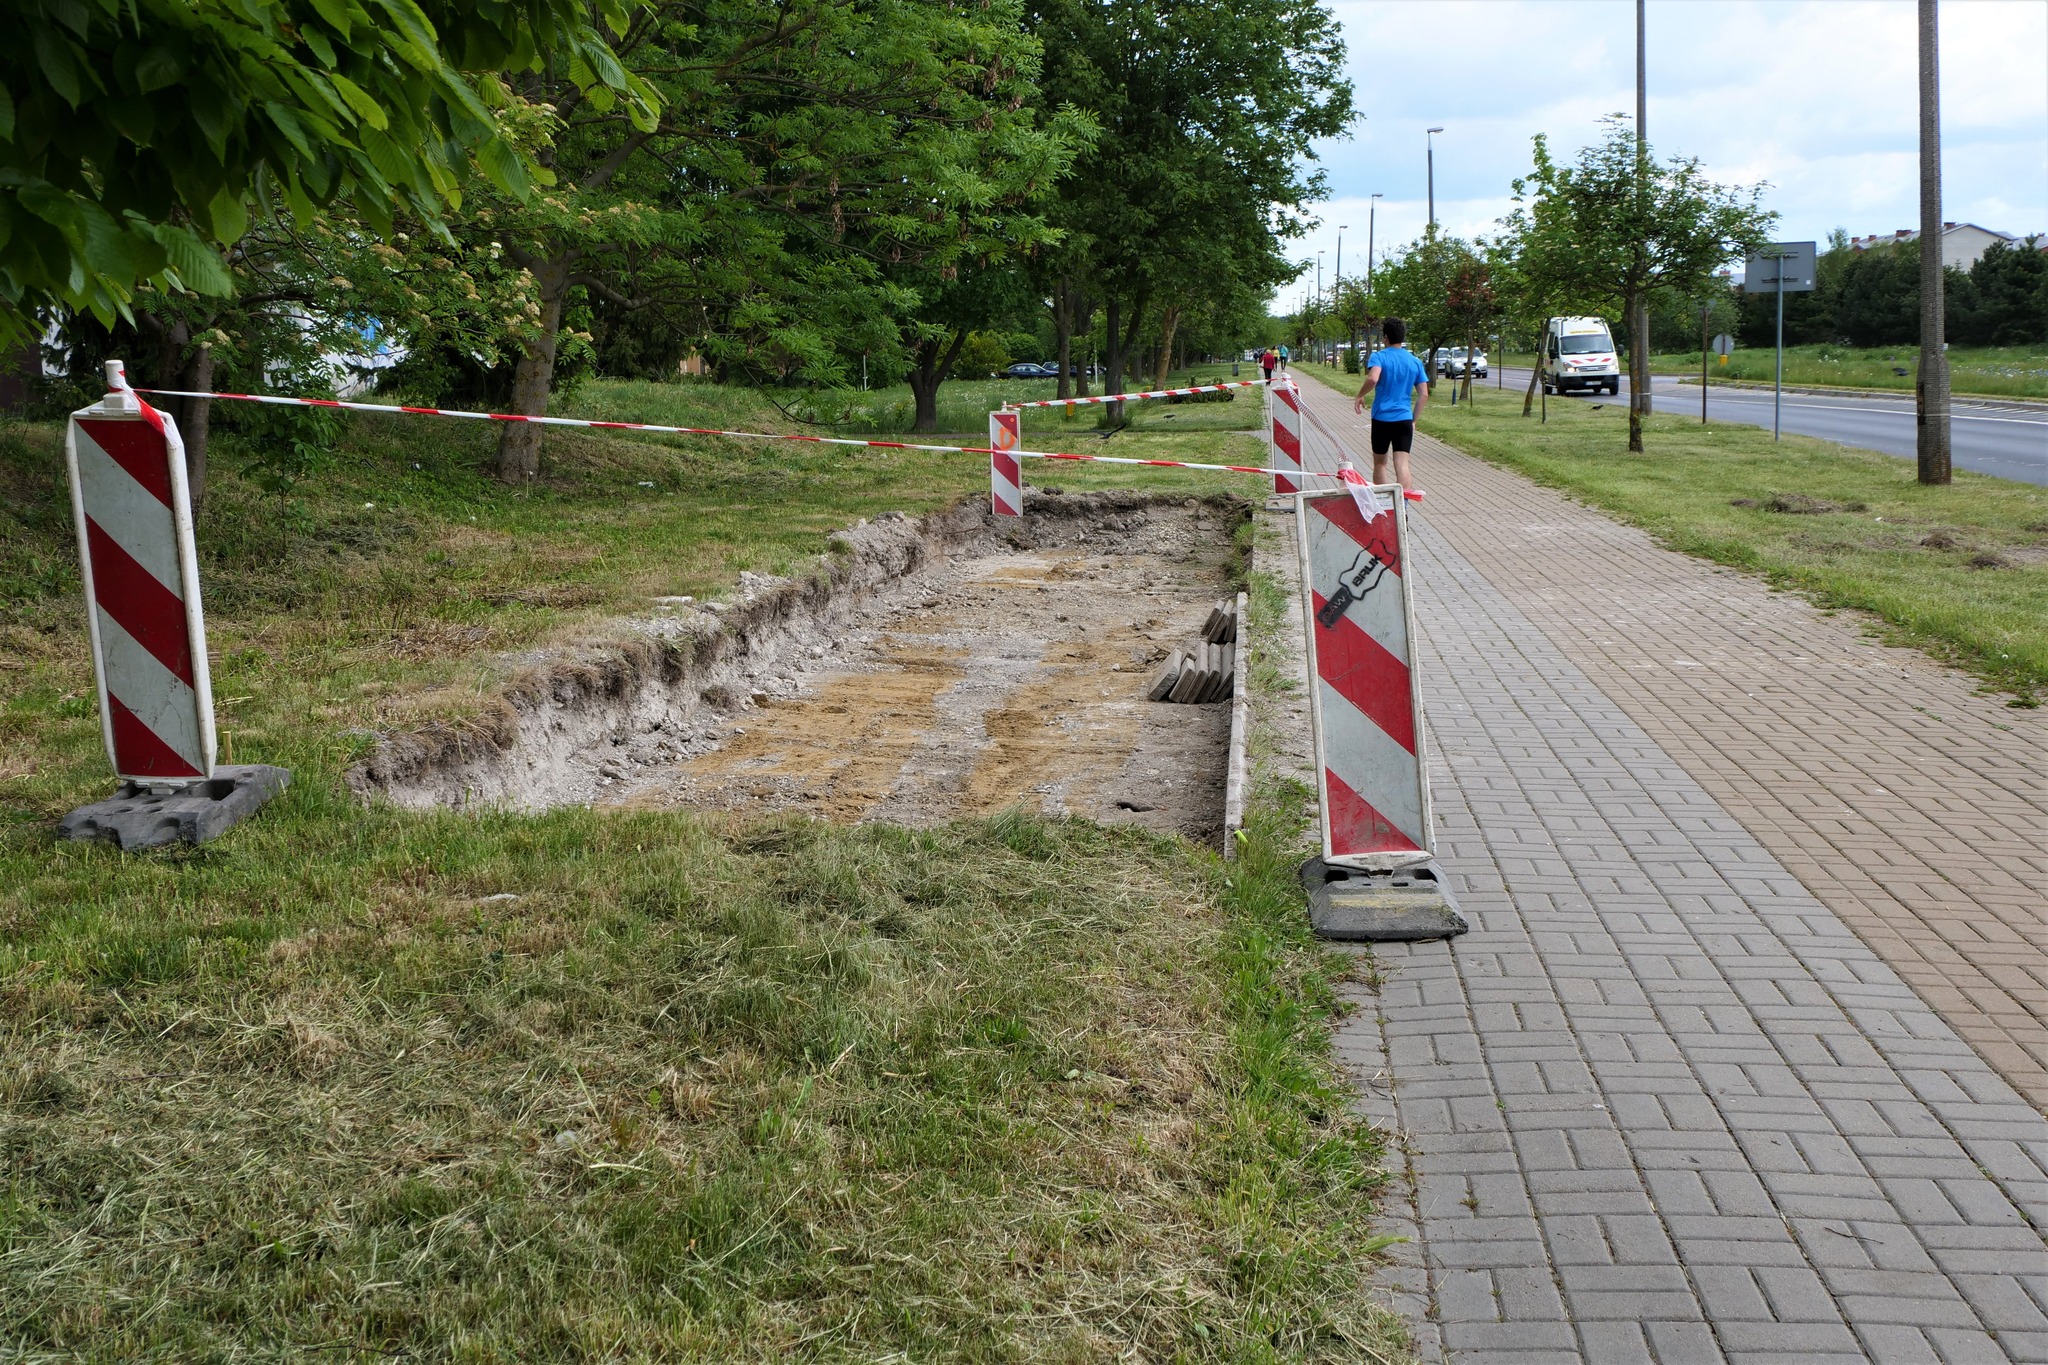 W Chełmie ruszyła budowa systemu roweru miejskiego. Jednoślady pojawią się latem (zdjęcia)